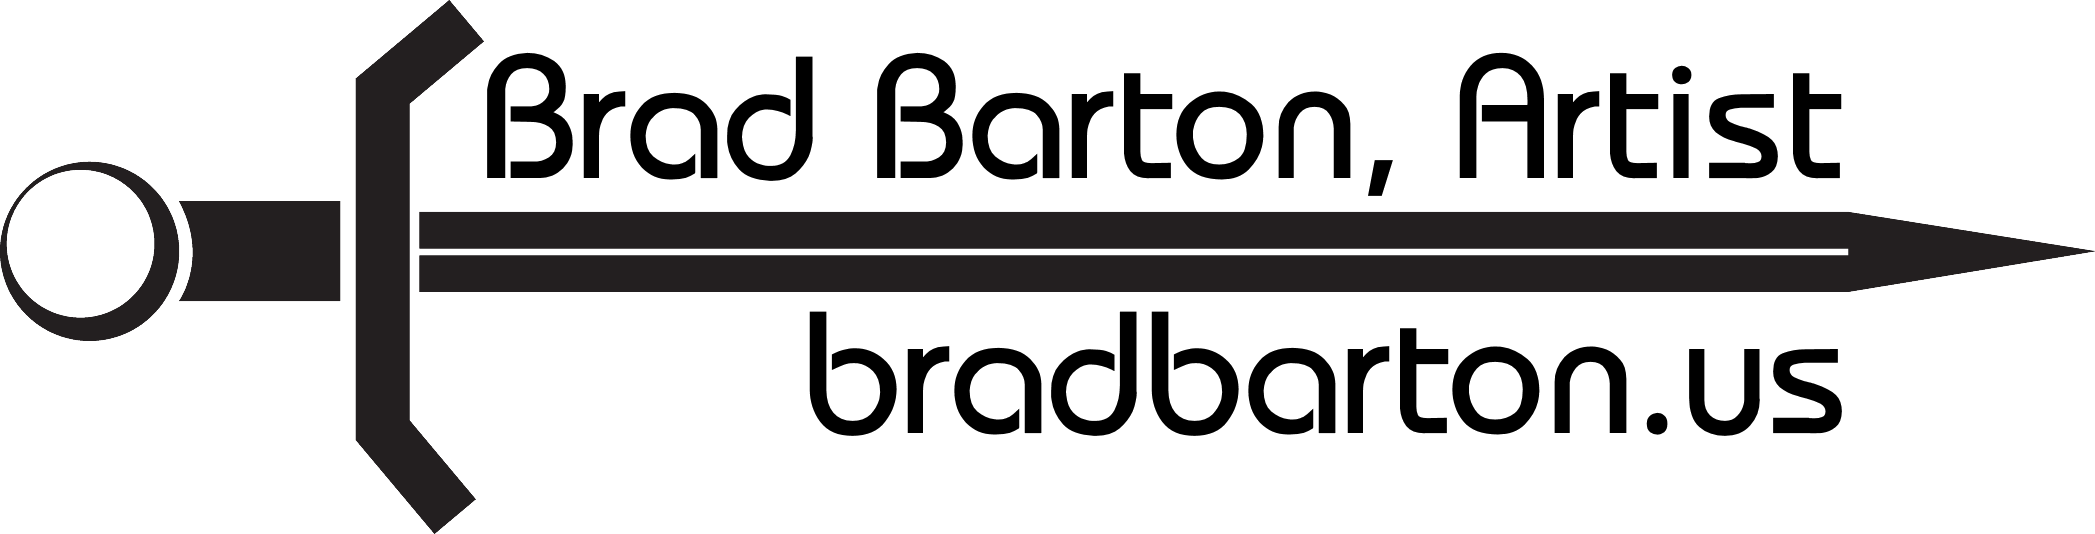 Brad Barton - Artist Website